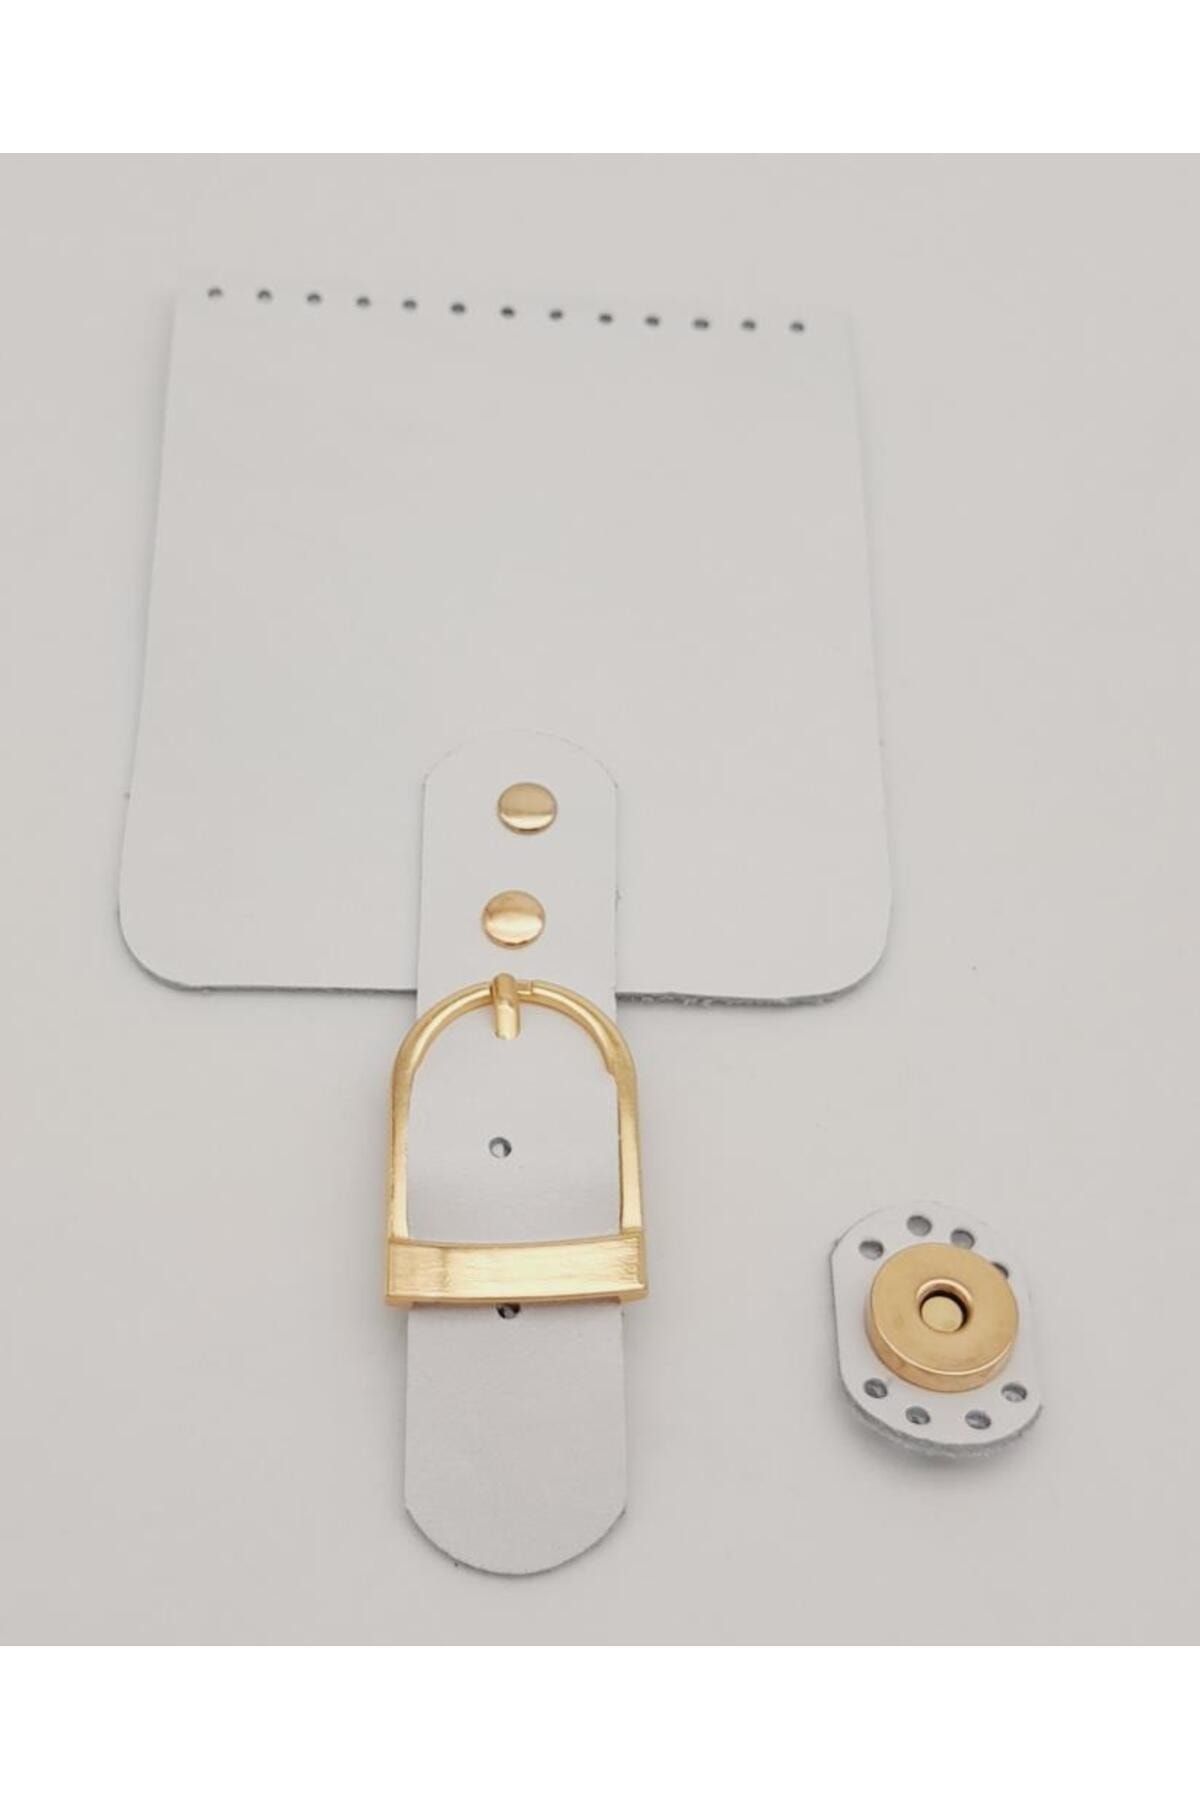 angel çanta aksesuar Çanta Aksesuar Deri 21x11 cm Beyaz Renk Çanta Kapağı Light Gold Metalli